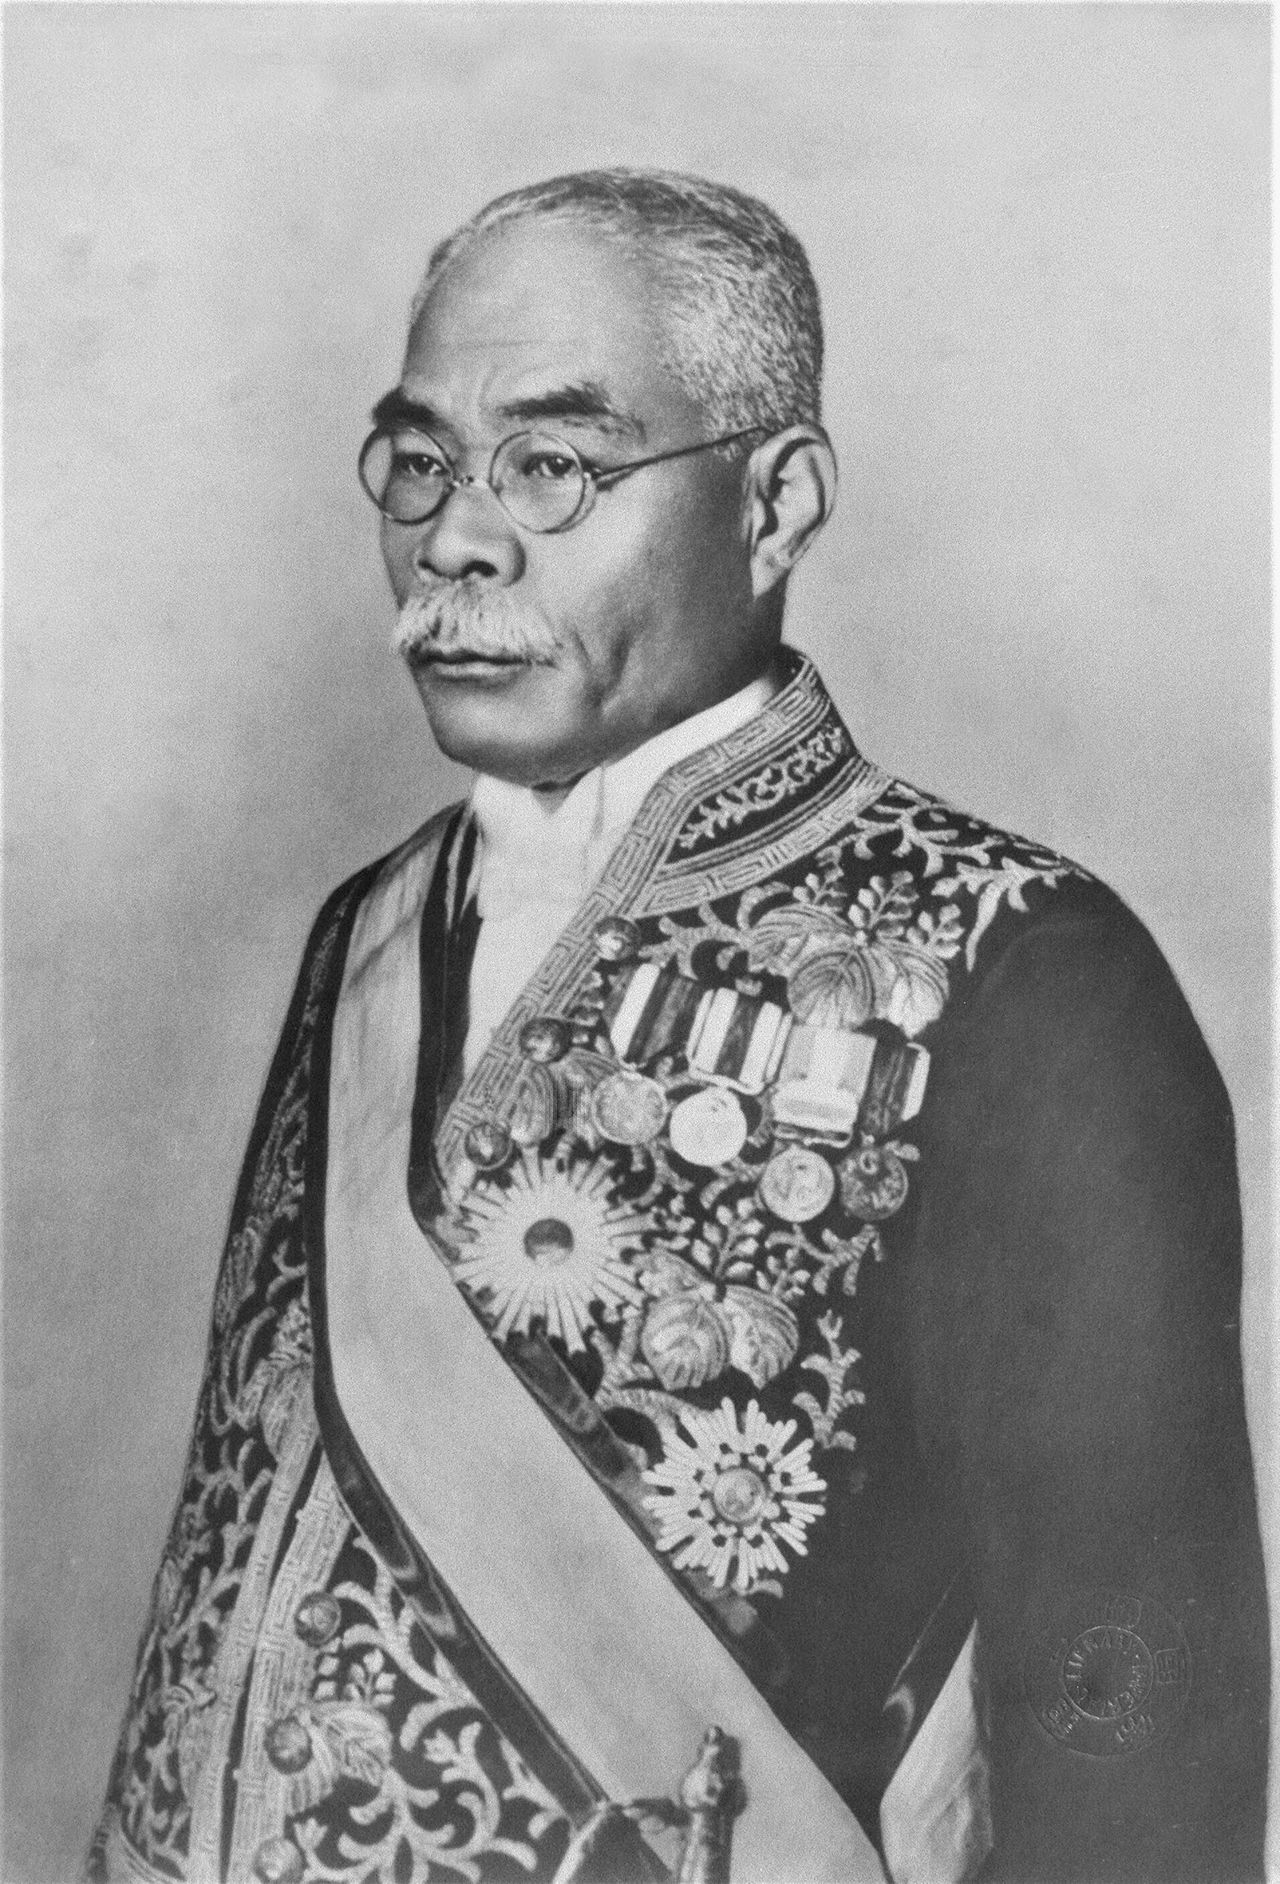 Хамагути Осати прозвали «премьер-министром-львом» (© Jiji)